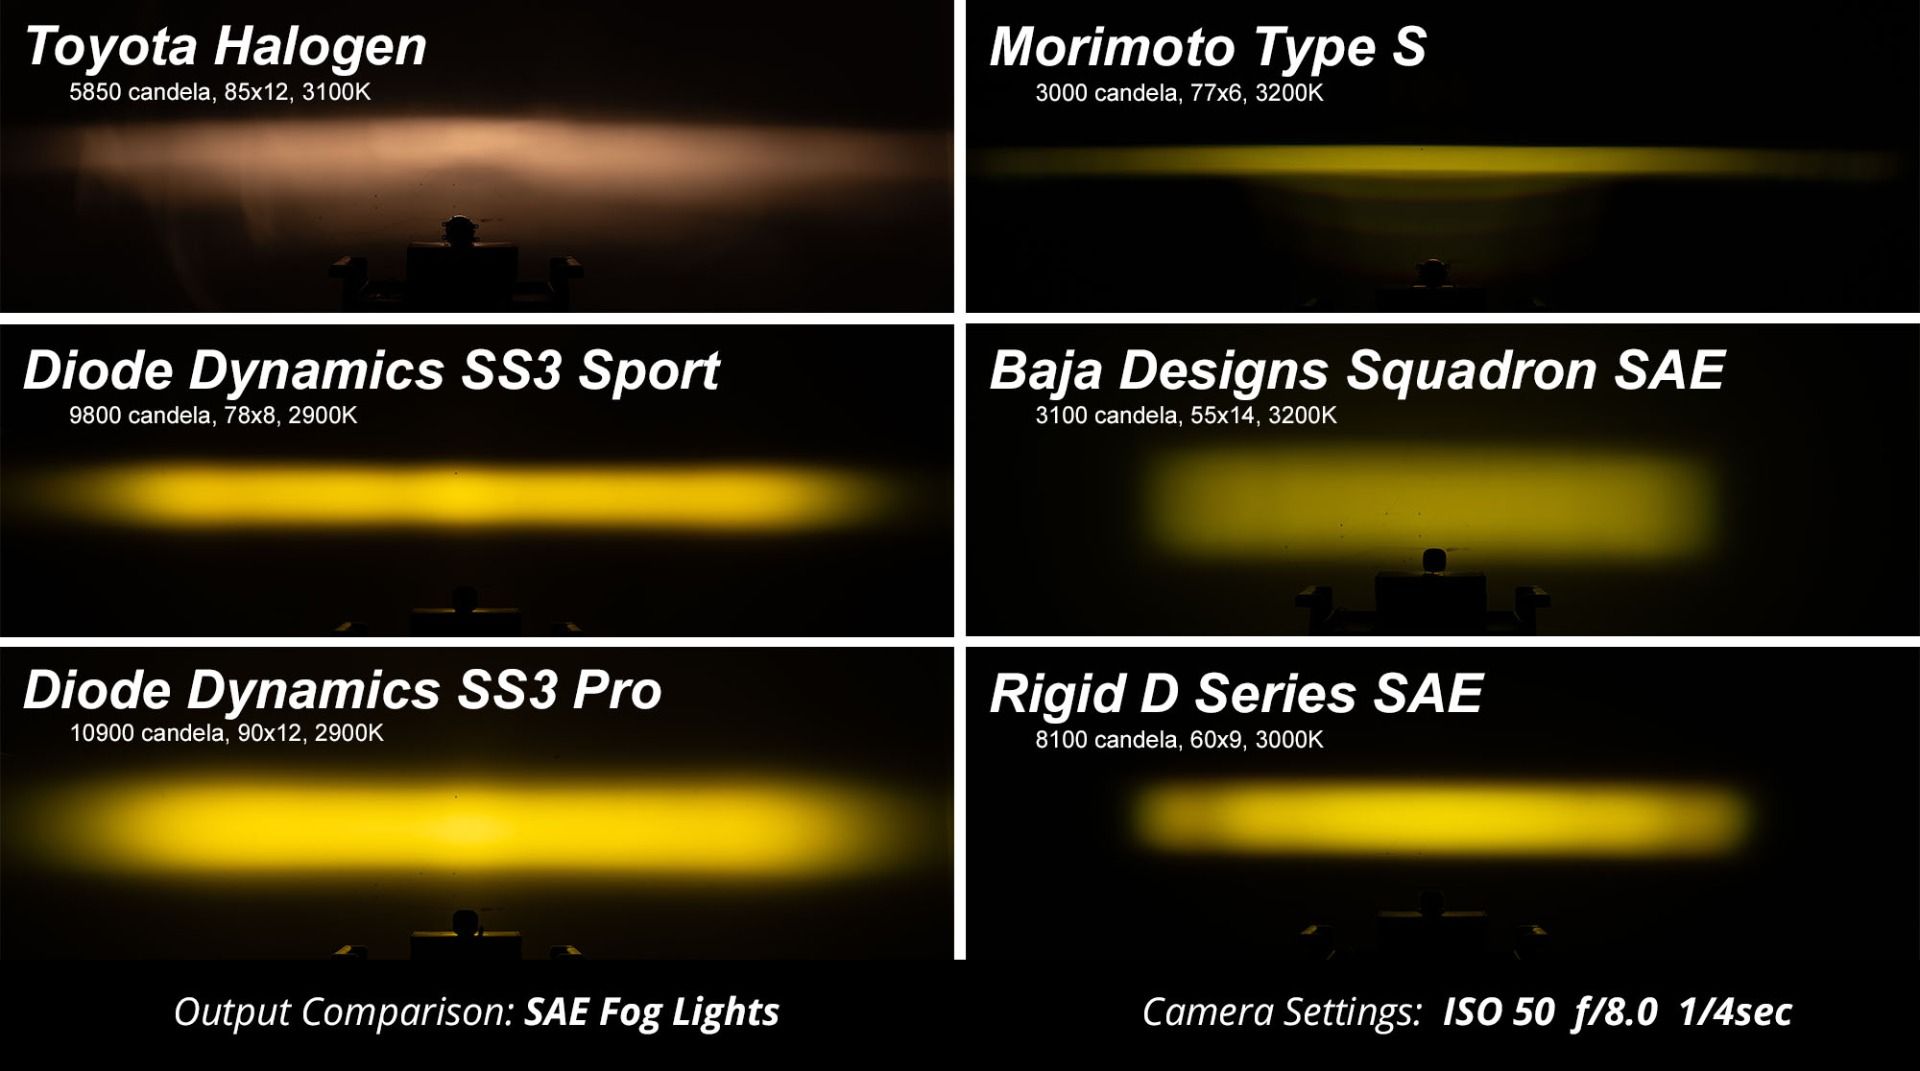 SS3 LED Fog Light Kit For 2015-2017 Subaru WRX/STi